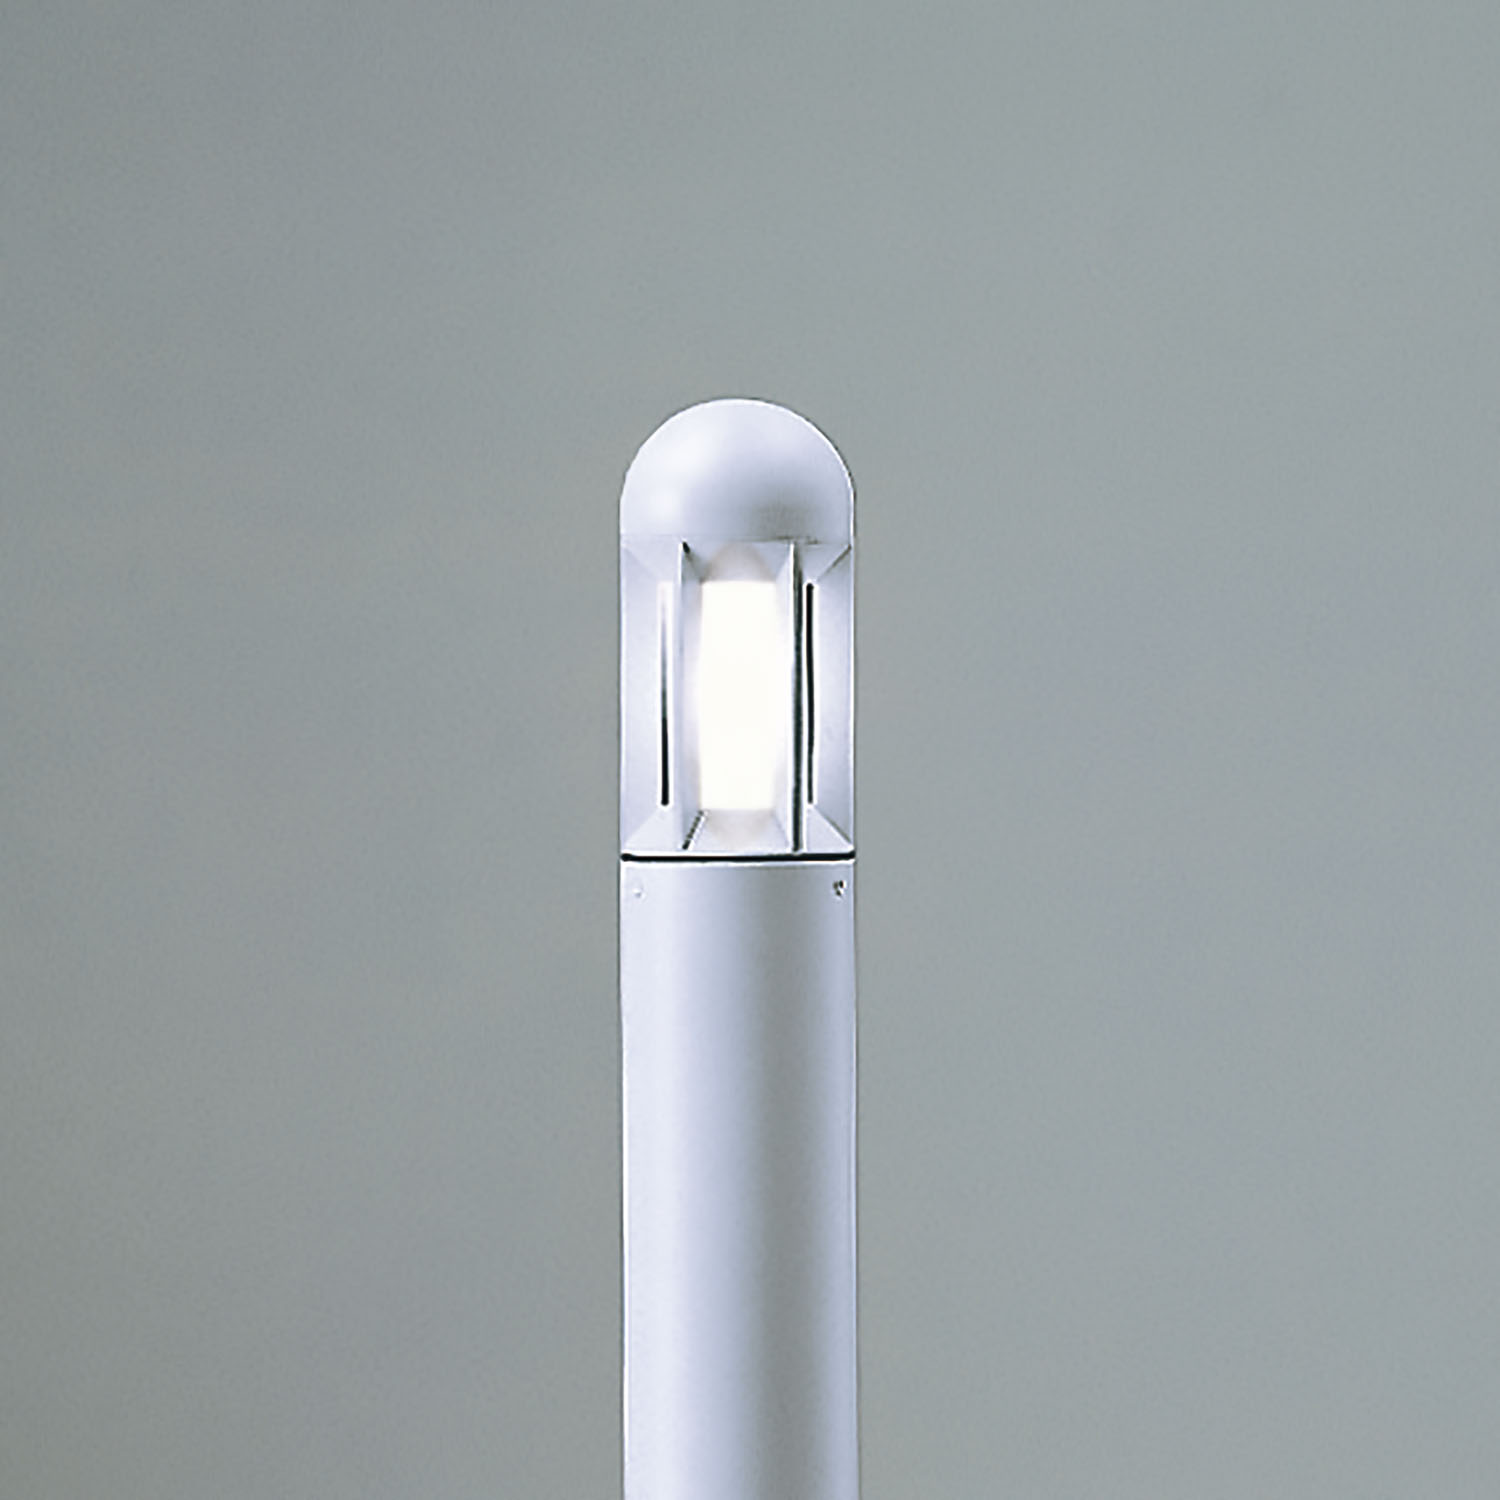 山田照明 AD-3201-L 山田照明 ガーデンライト シルバー LED（電球色） 屋外照明